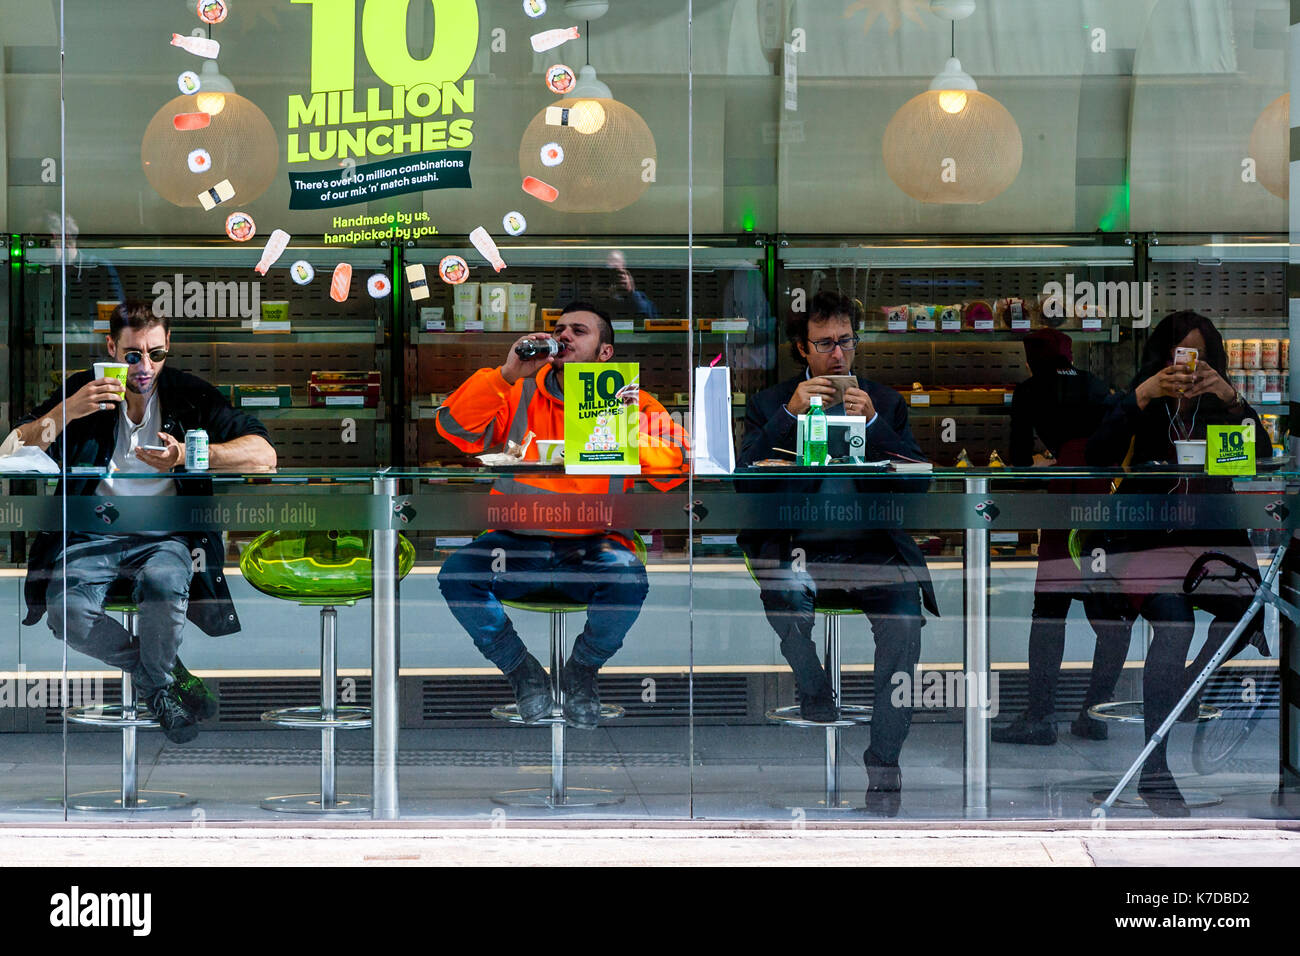 Persone mangiare il pranzo in una caffetteria nella city di Londra, London, Regno Unito Foto Stock